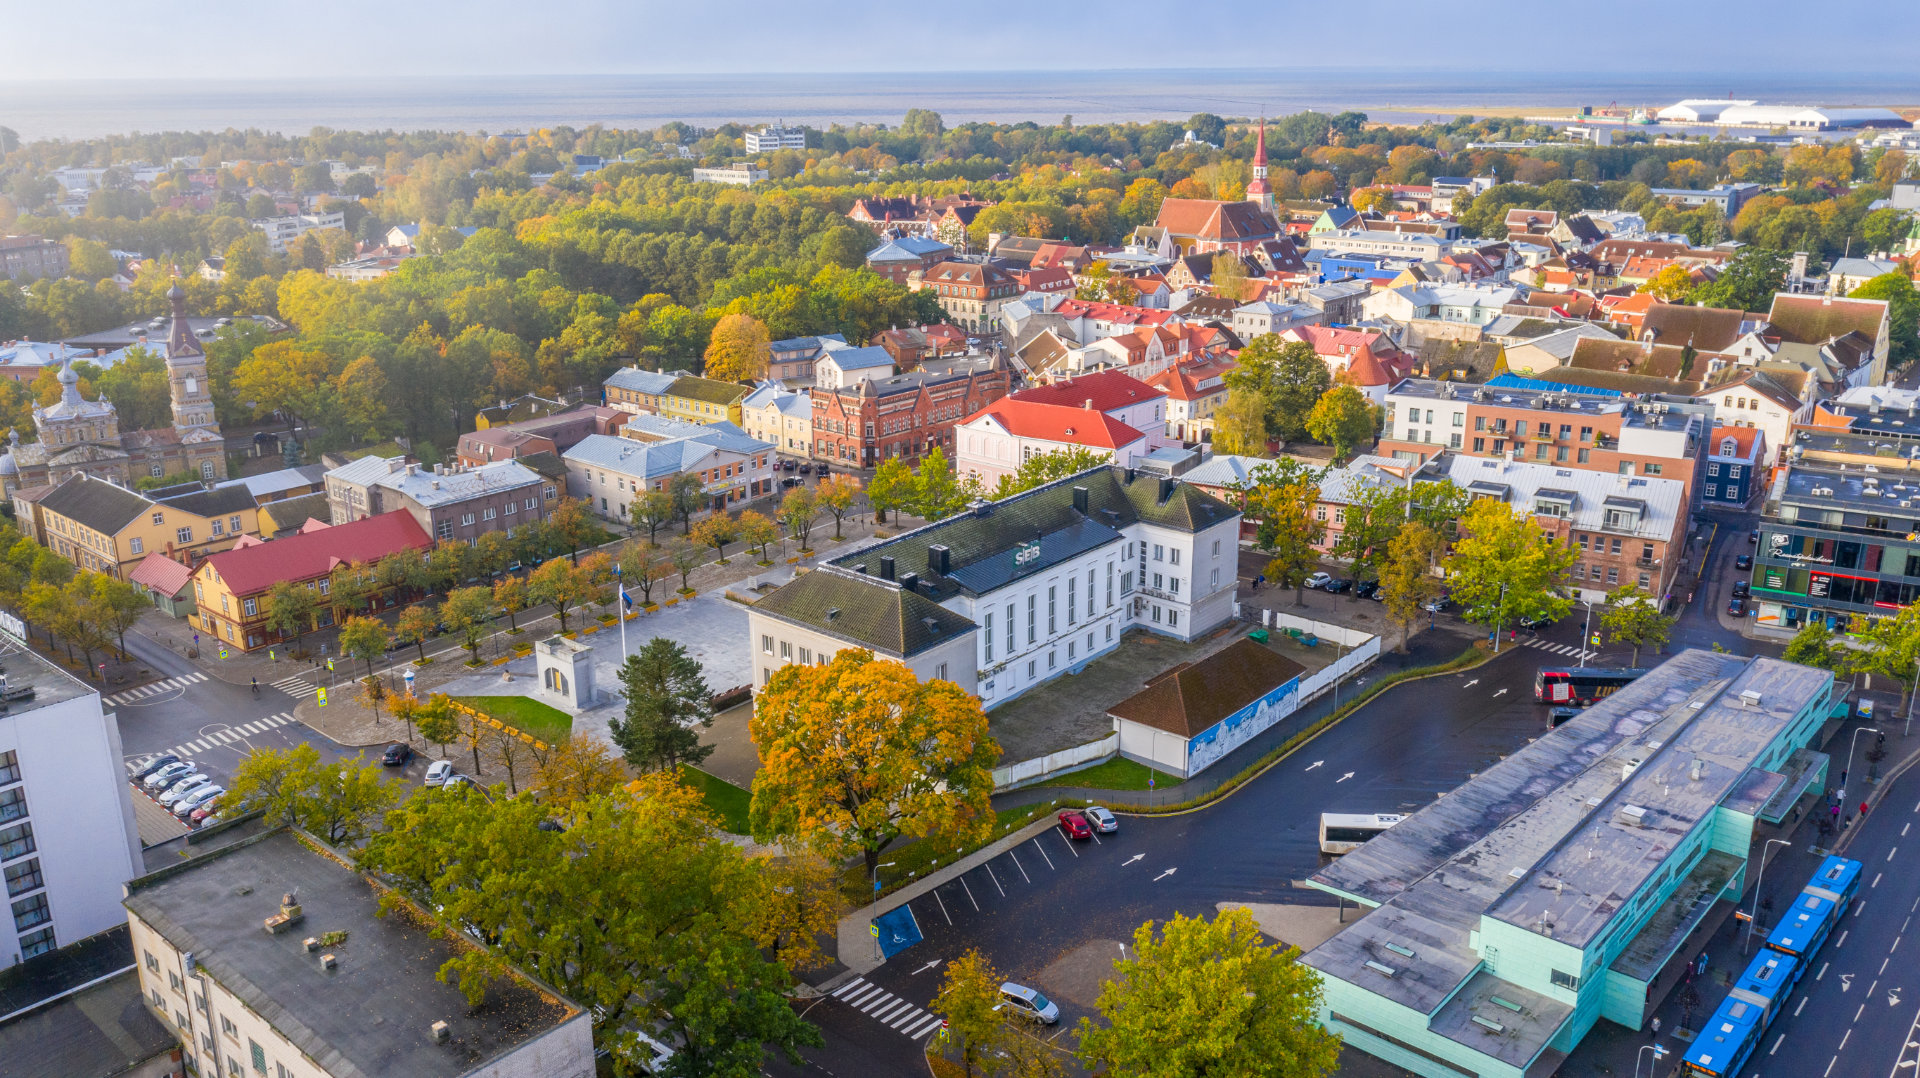 Pärnu, Estonia